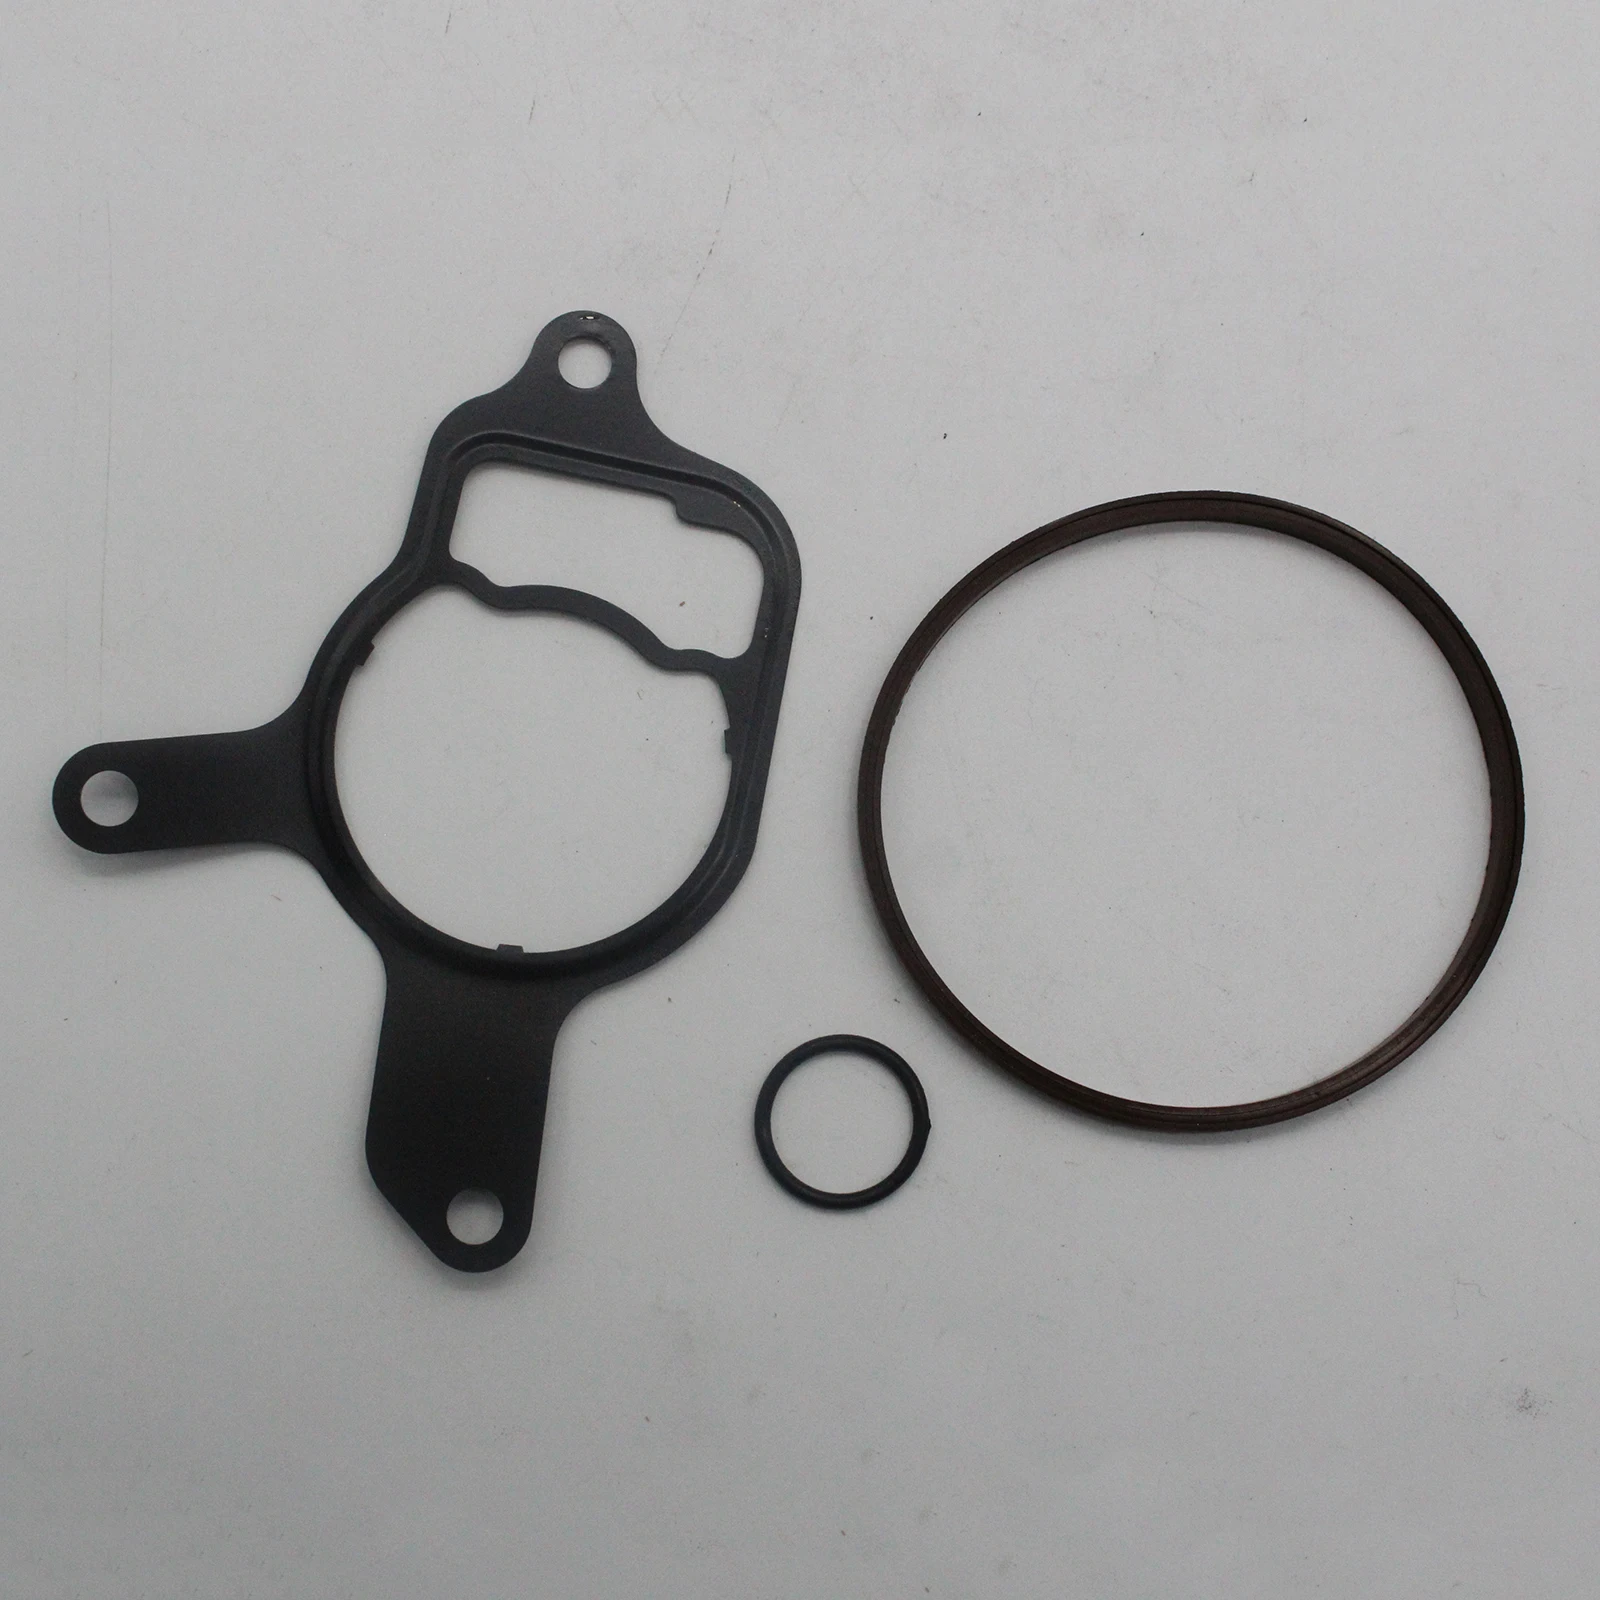 Automobile Professional 2.5L Vacuum Pump Repair Re-seal Kit for Volkswagen Beetle Rabbit Passat and Audi TT RS